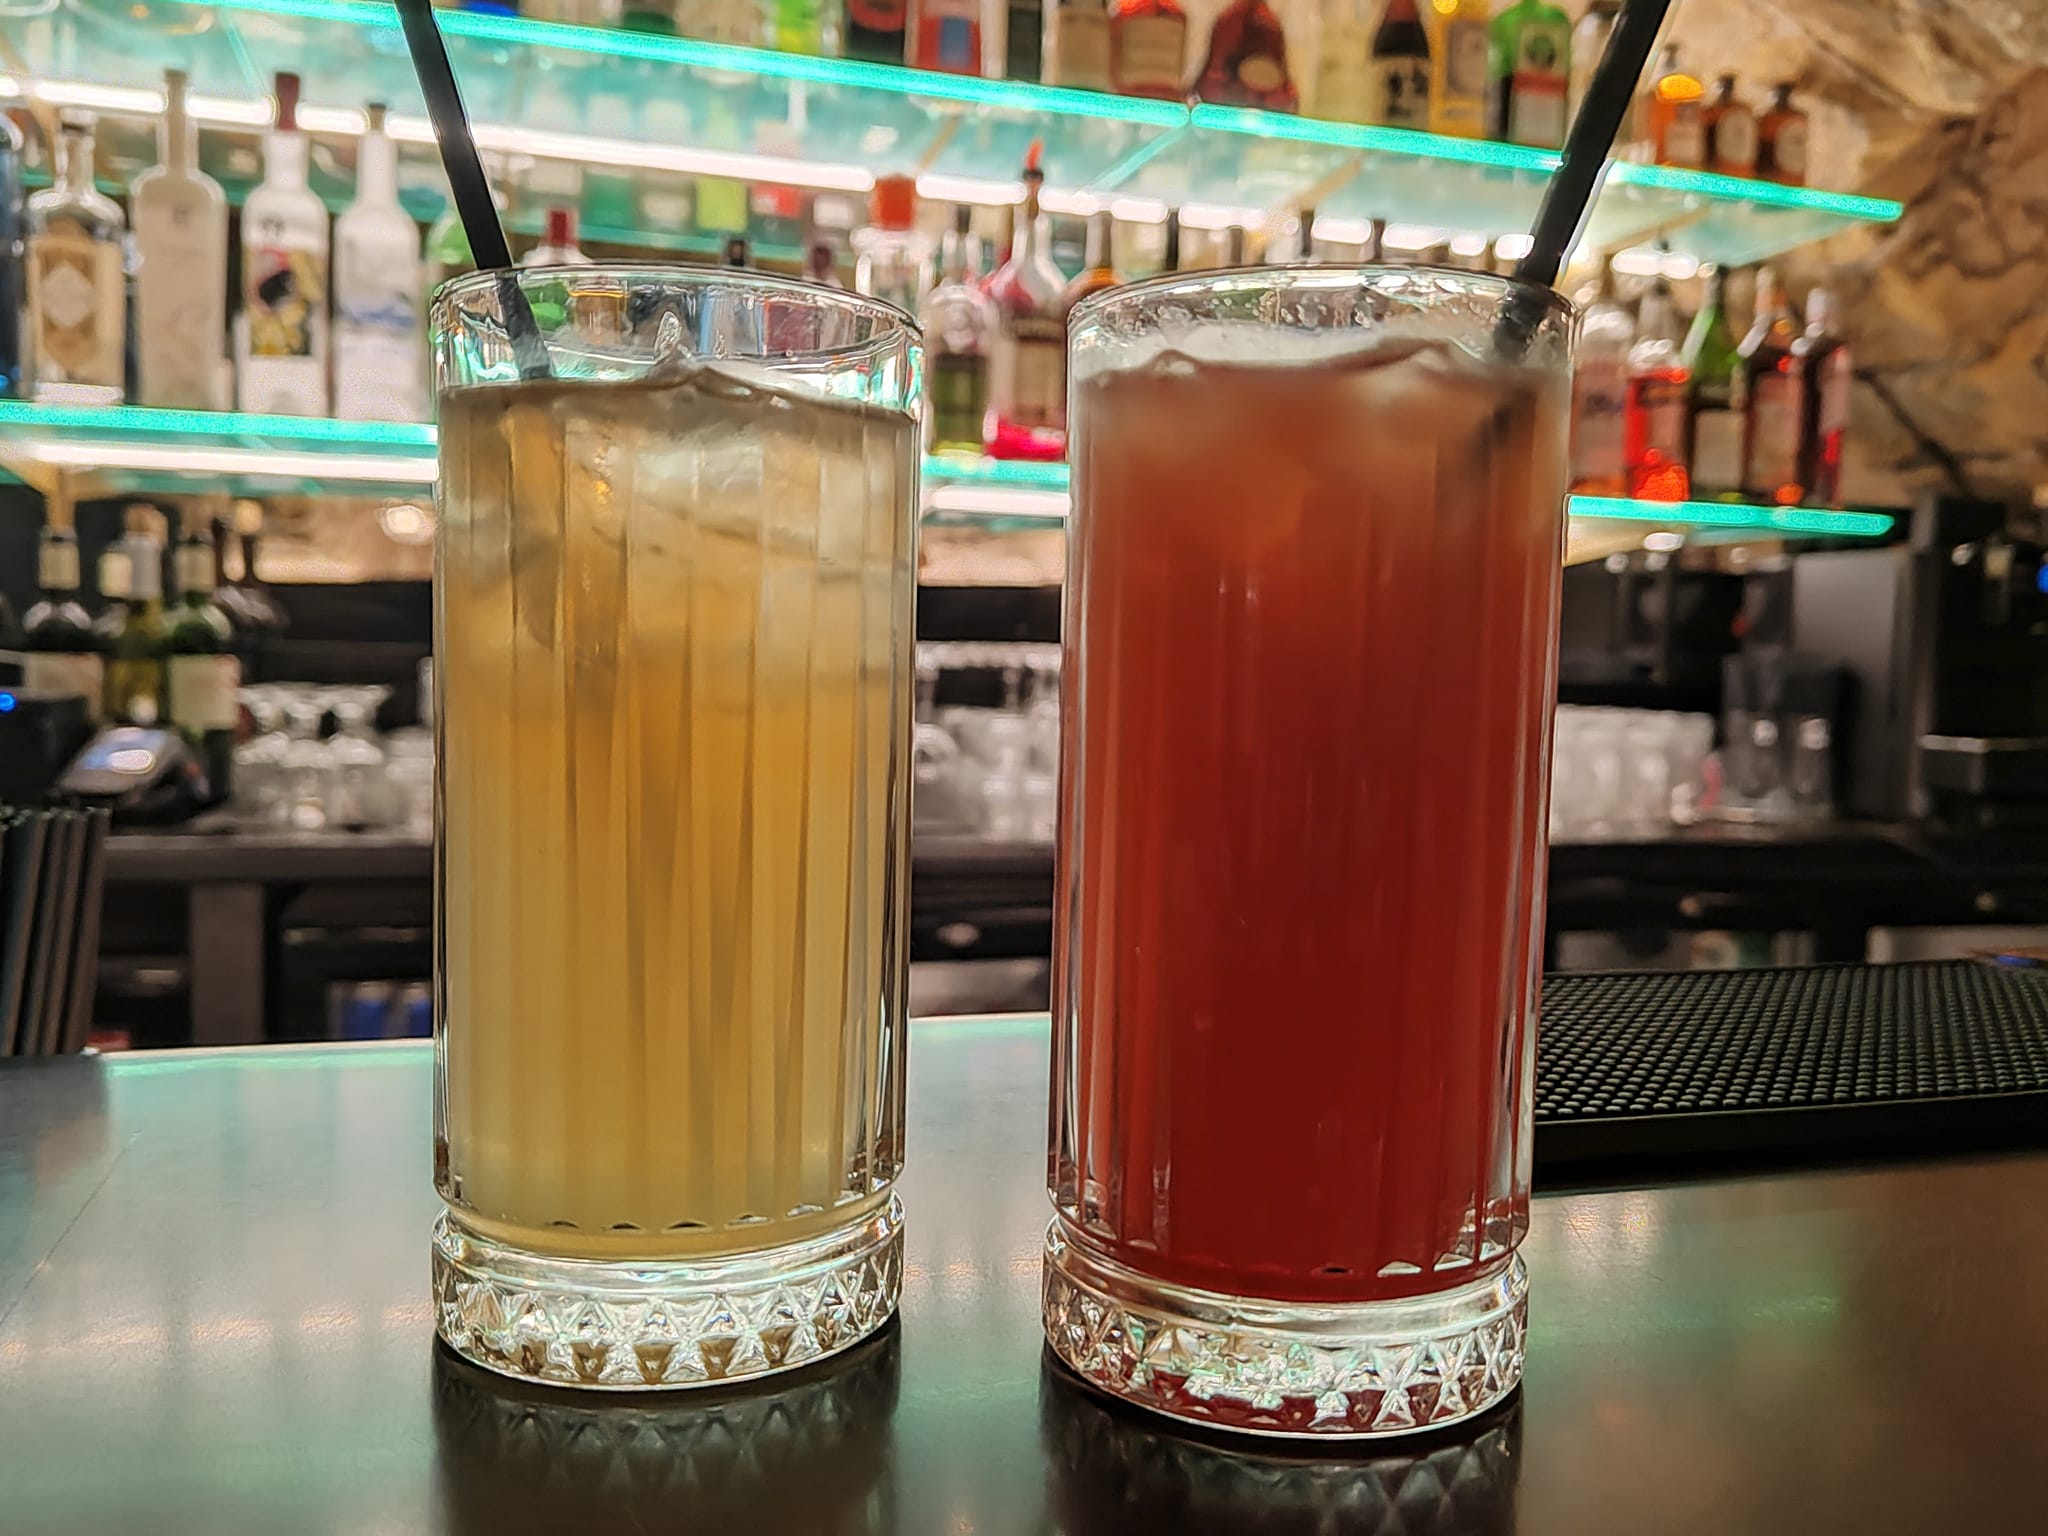 Bar de nuit La Planque (Paris 1er) - Moscow mule, French Martini